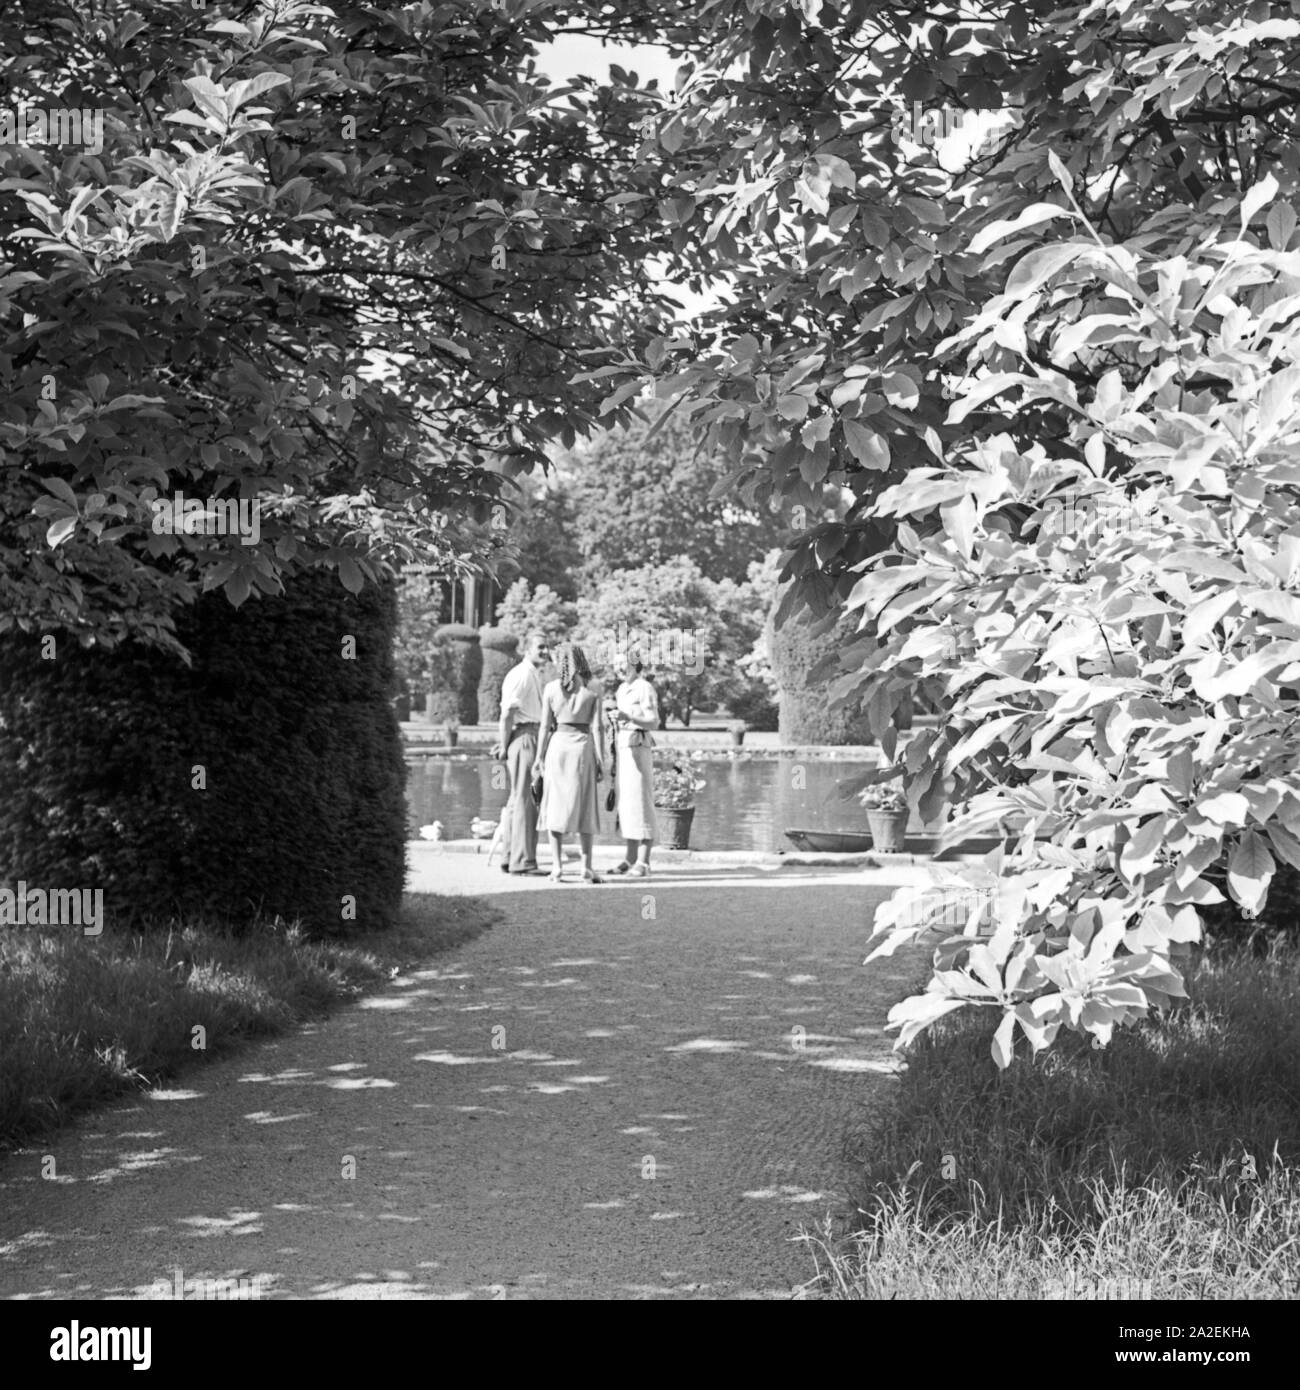 Menschen in einem Park a Bad Cannstatt, Deutschland 1930er Jahre. La gente in un giardino pubblico a Bad Cannstatt, Germania 1930s. Foto Stock